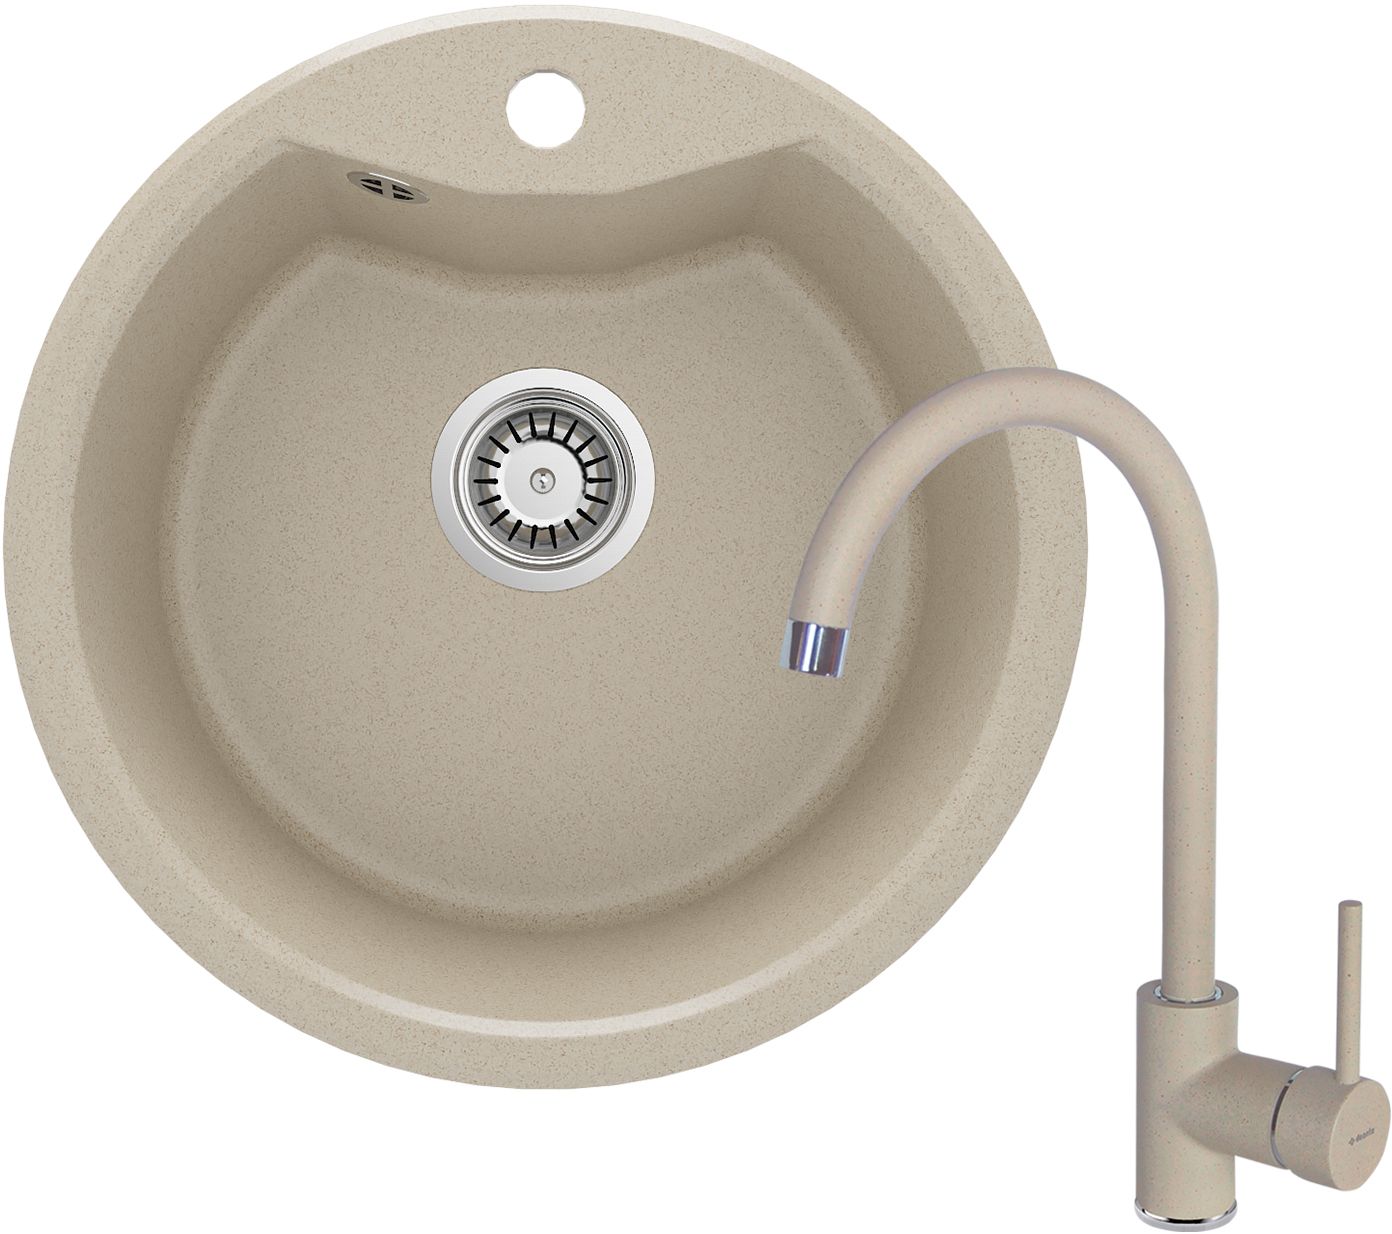 Granite sink with tap, 1-bowl - ZRSB7803 - Główne zdjęcie produktowe